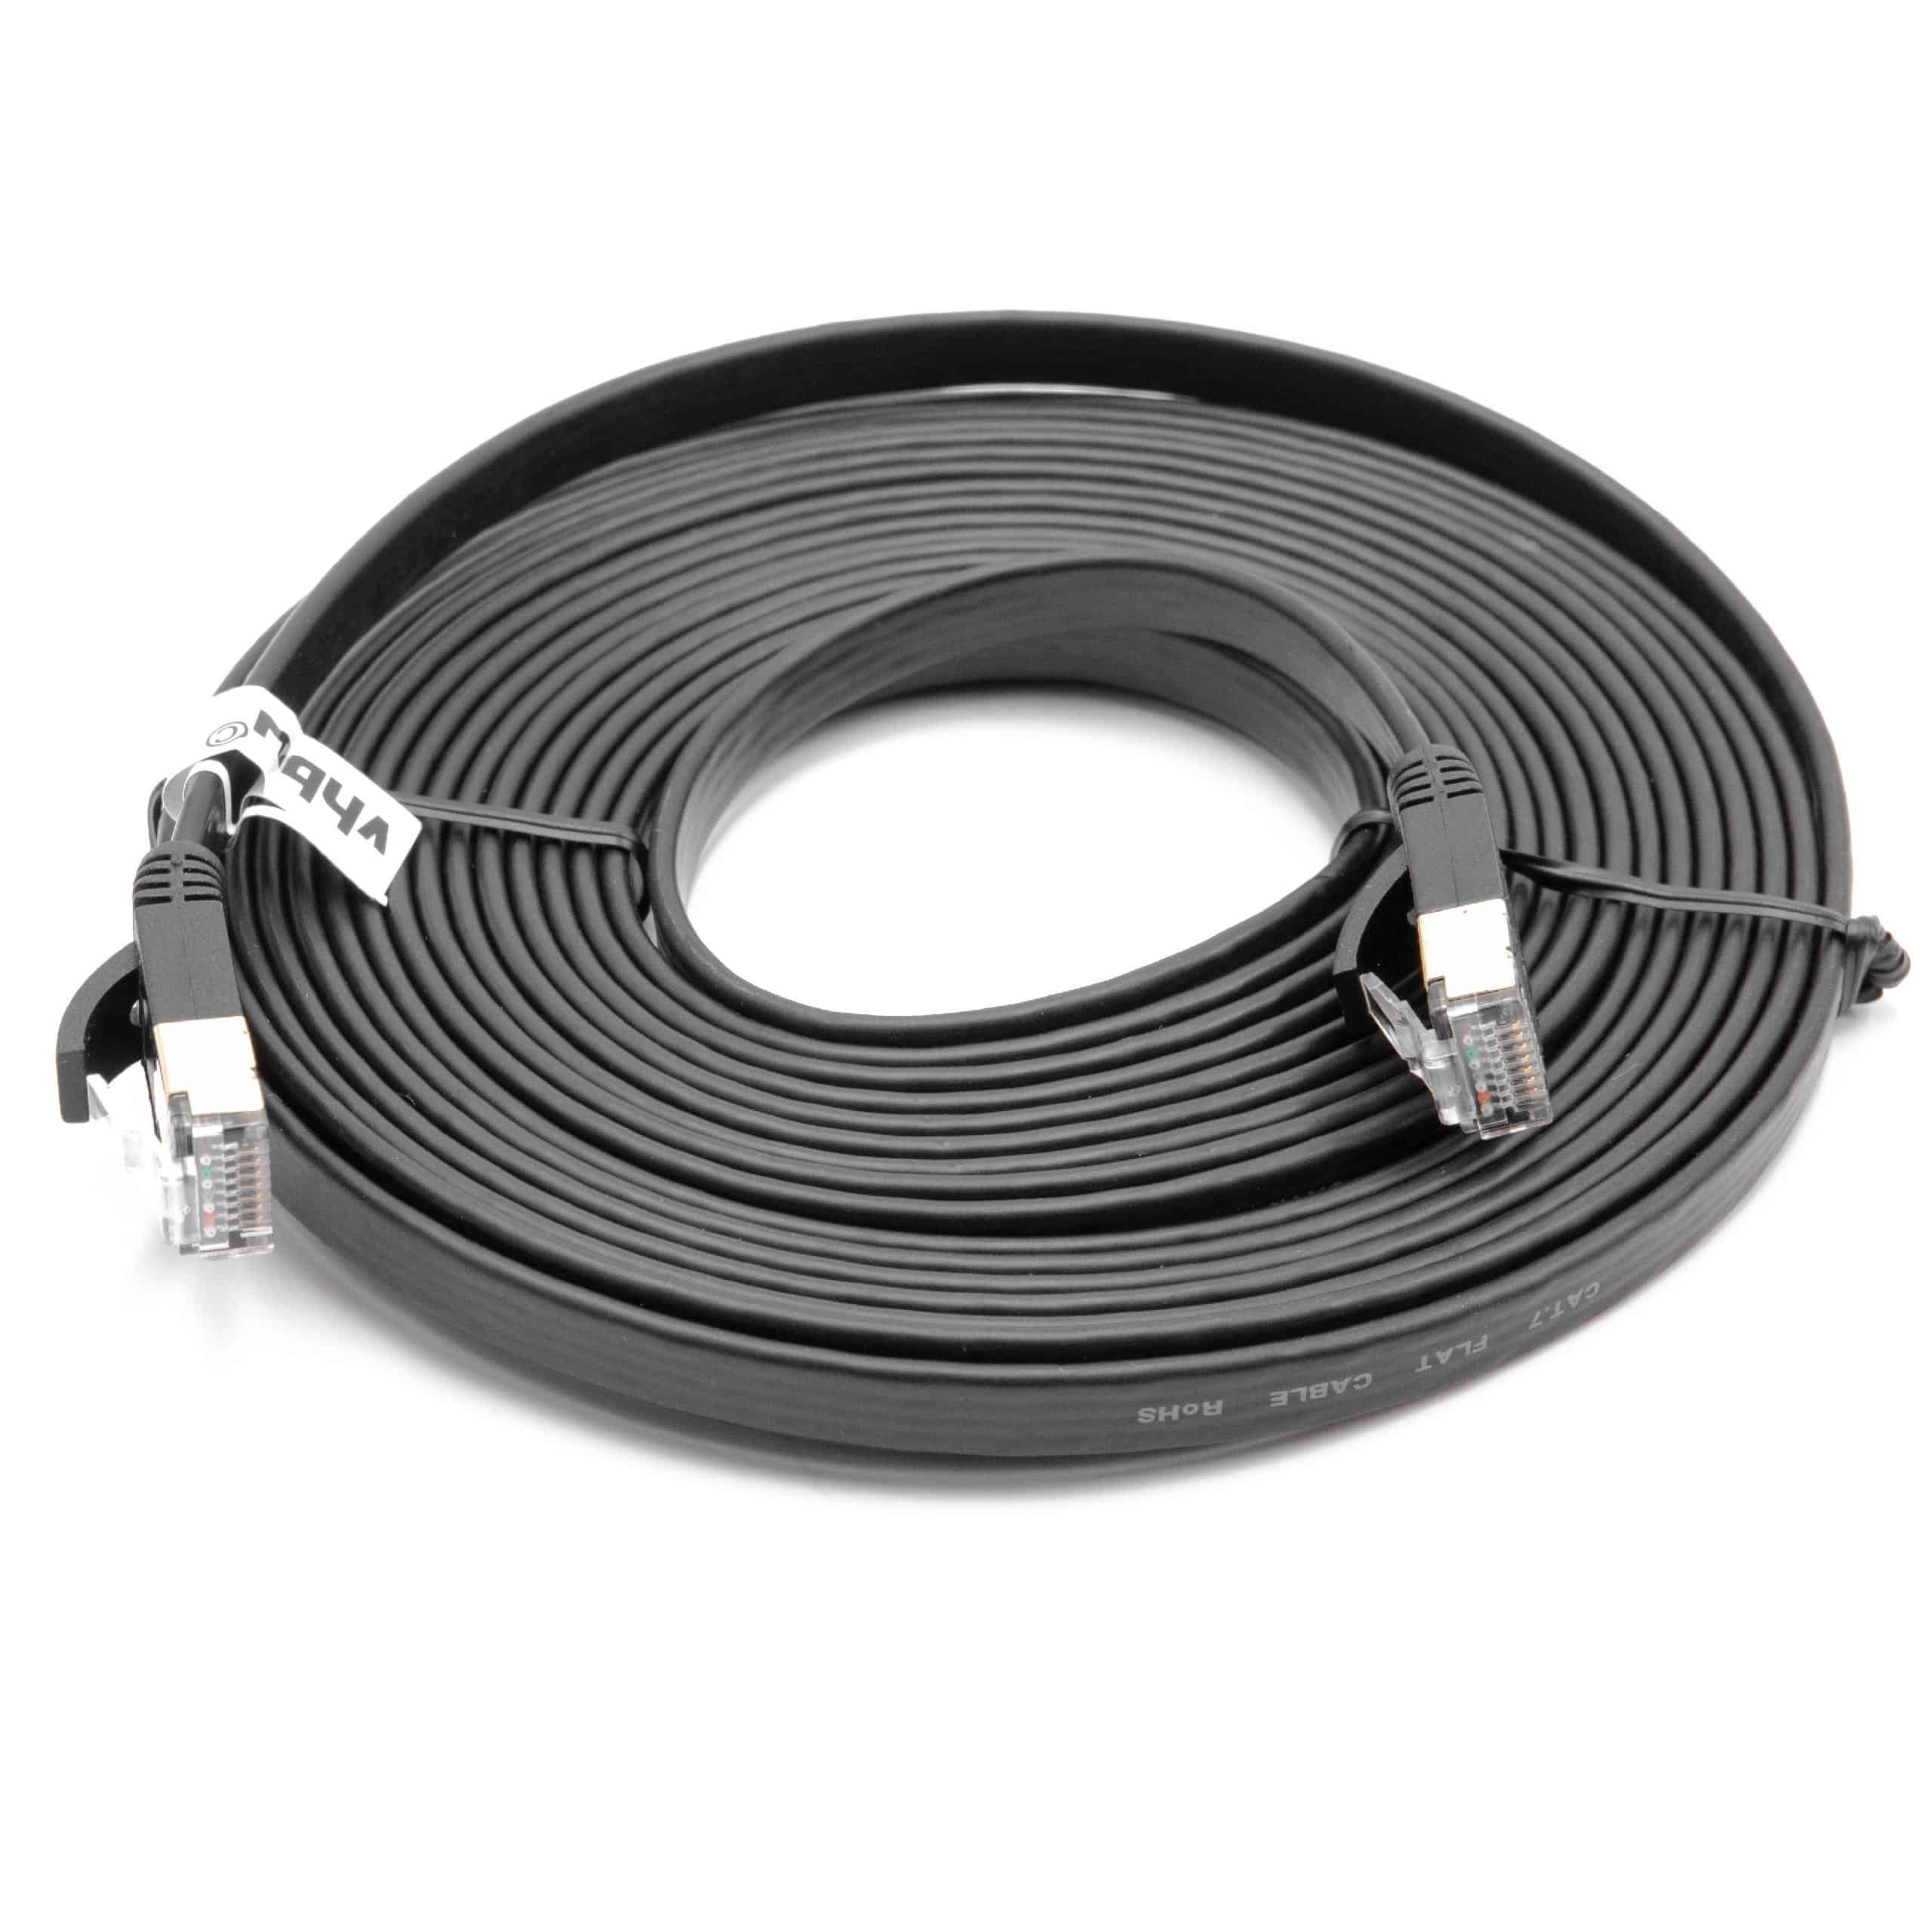 Cable de red de Ethernet, LAN, cable patch Cat7 5m negro cable plano de tendido